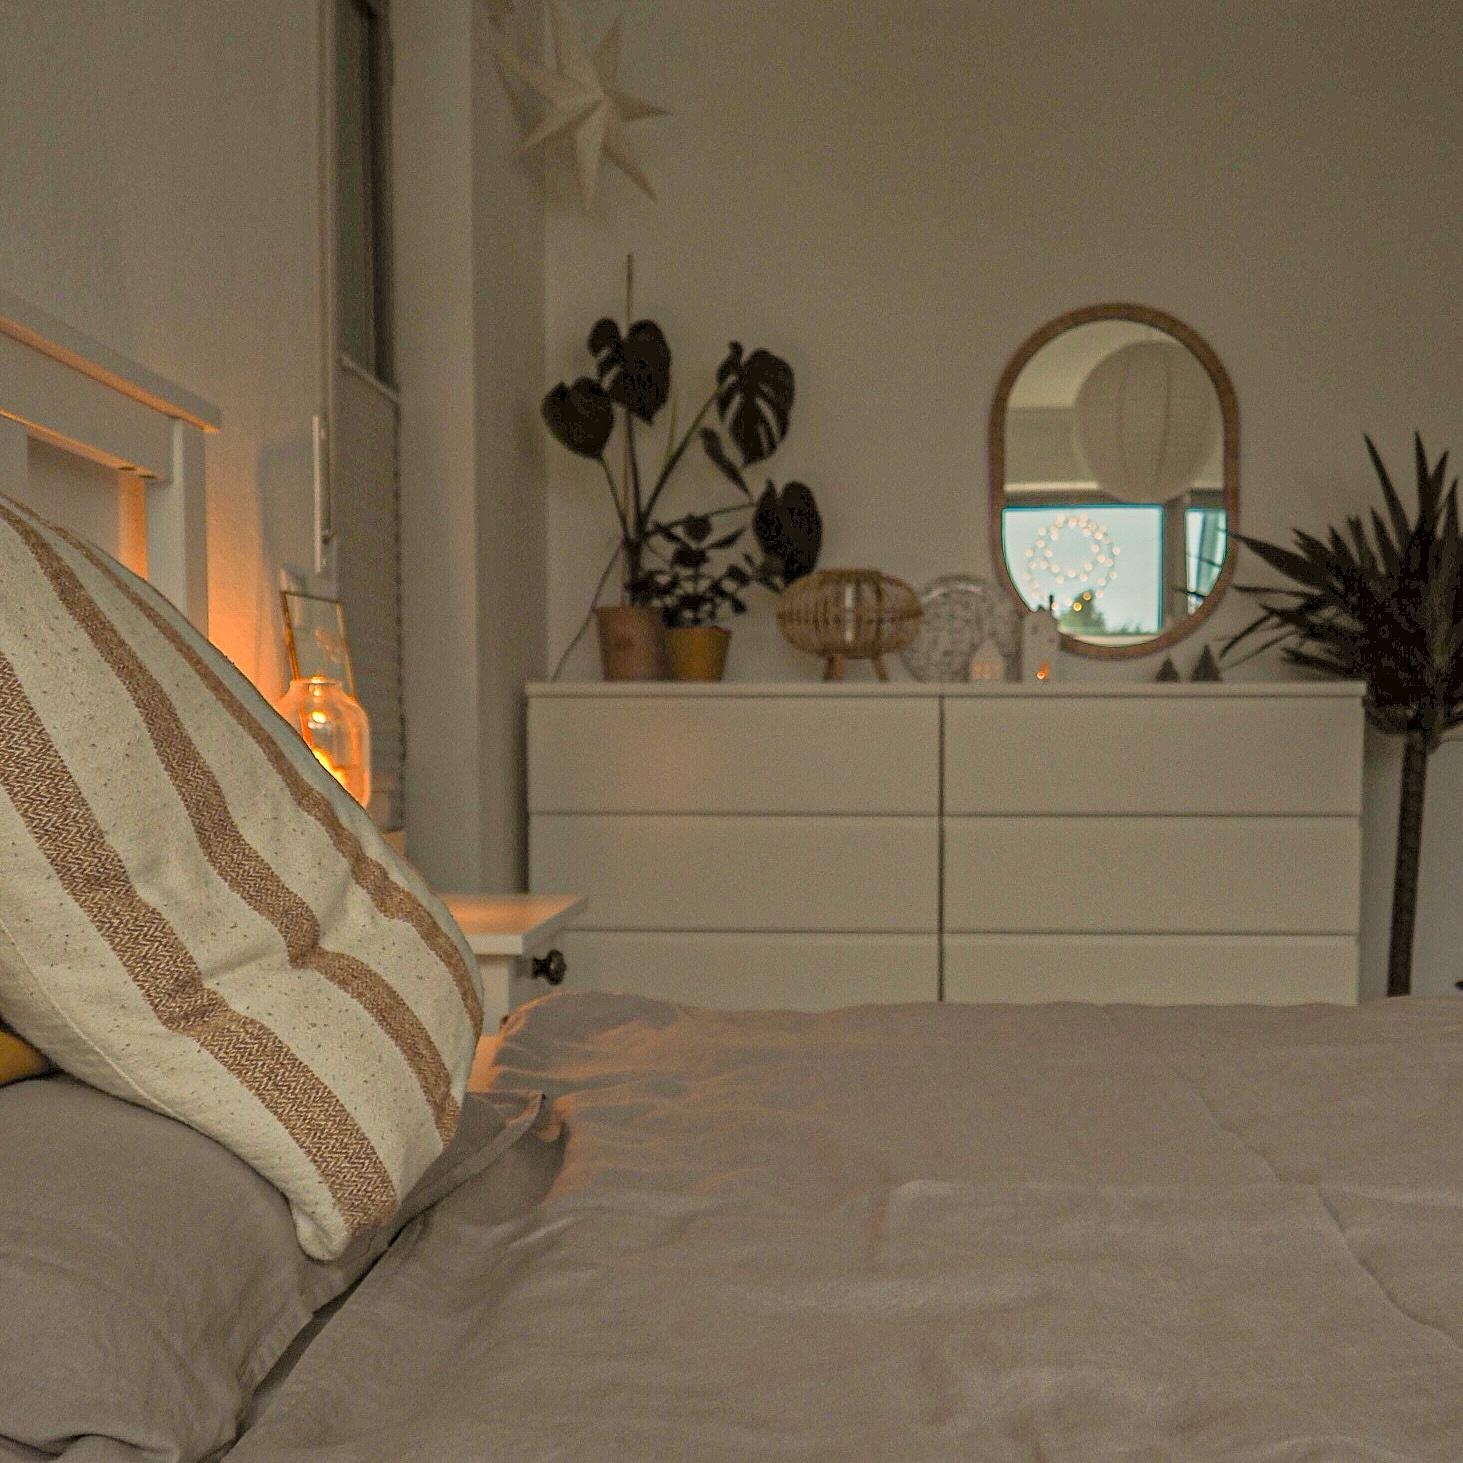 Im Schlafzimmer wird's endlich auch gemütlich...
#bedroom #bedroomstories #schlafzimmerinspo #mycozyhome #wood #hygge